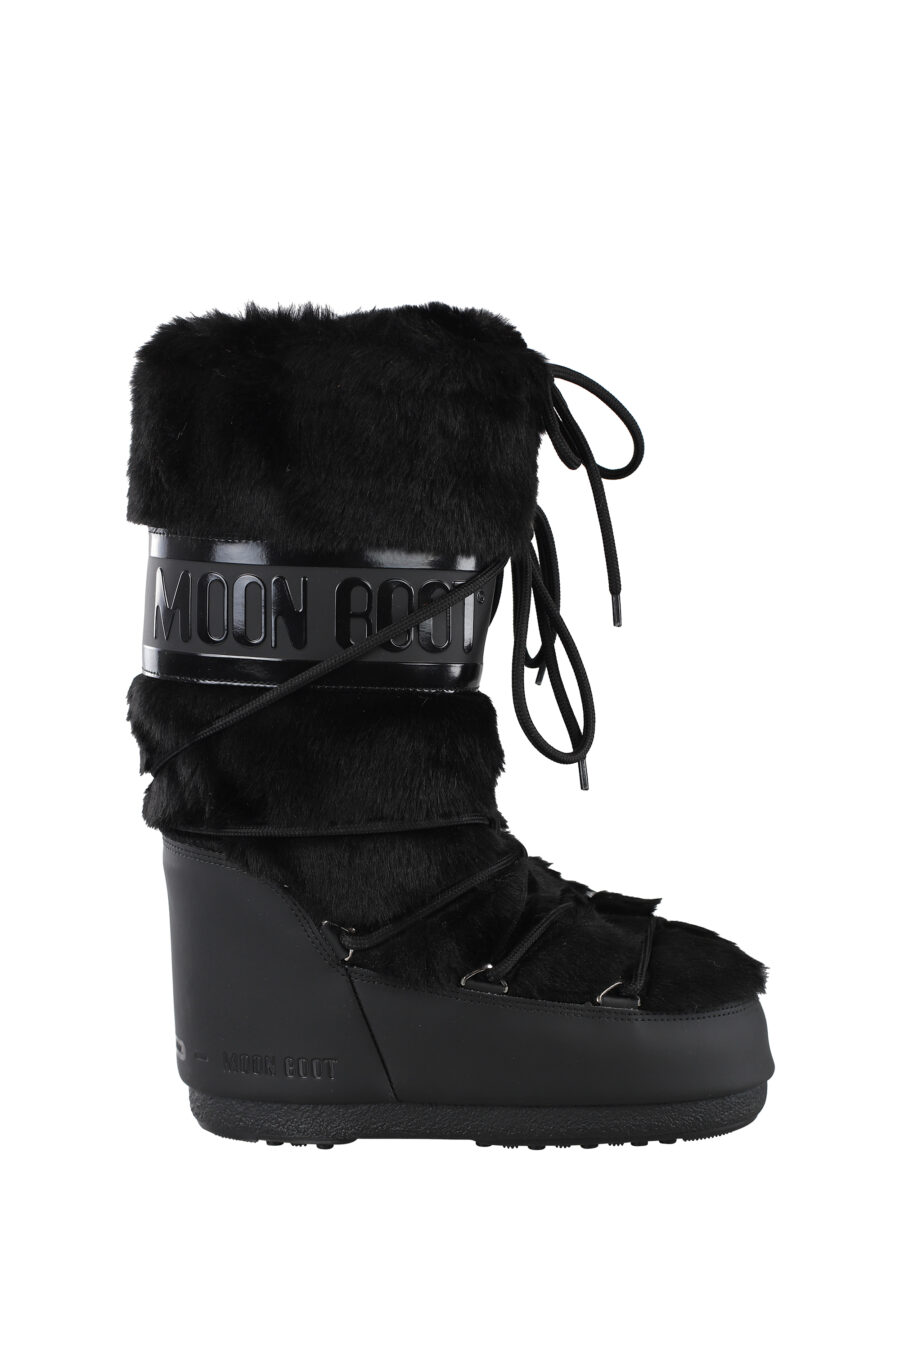 Moon Boot - Botas negras de nieve con logo monocromático - BLS Fashion